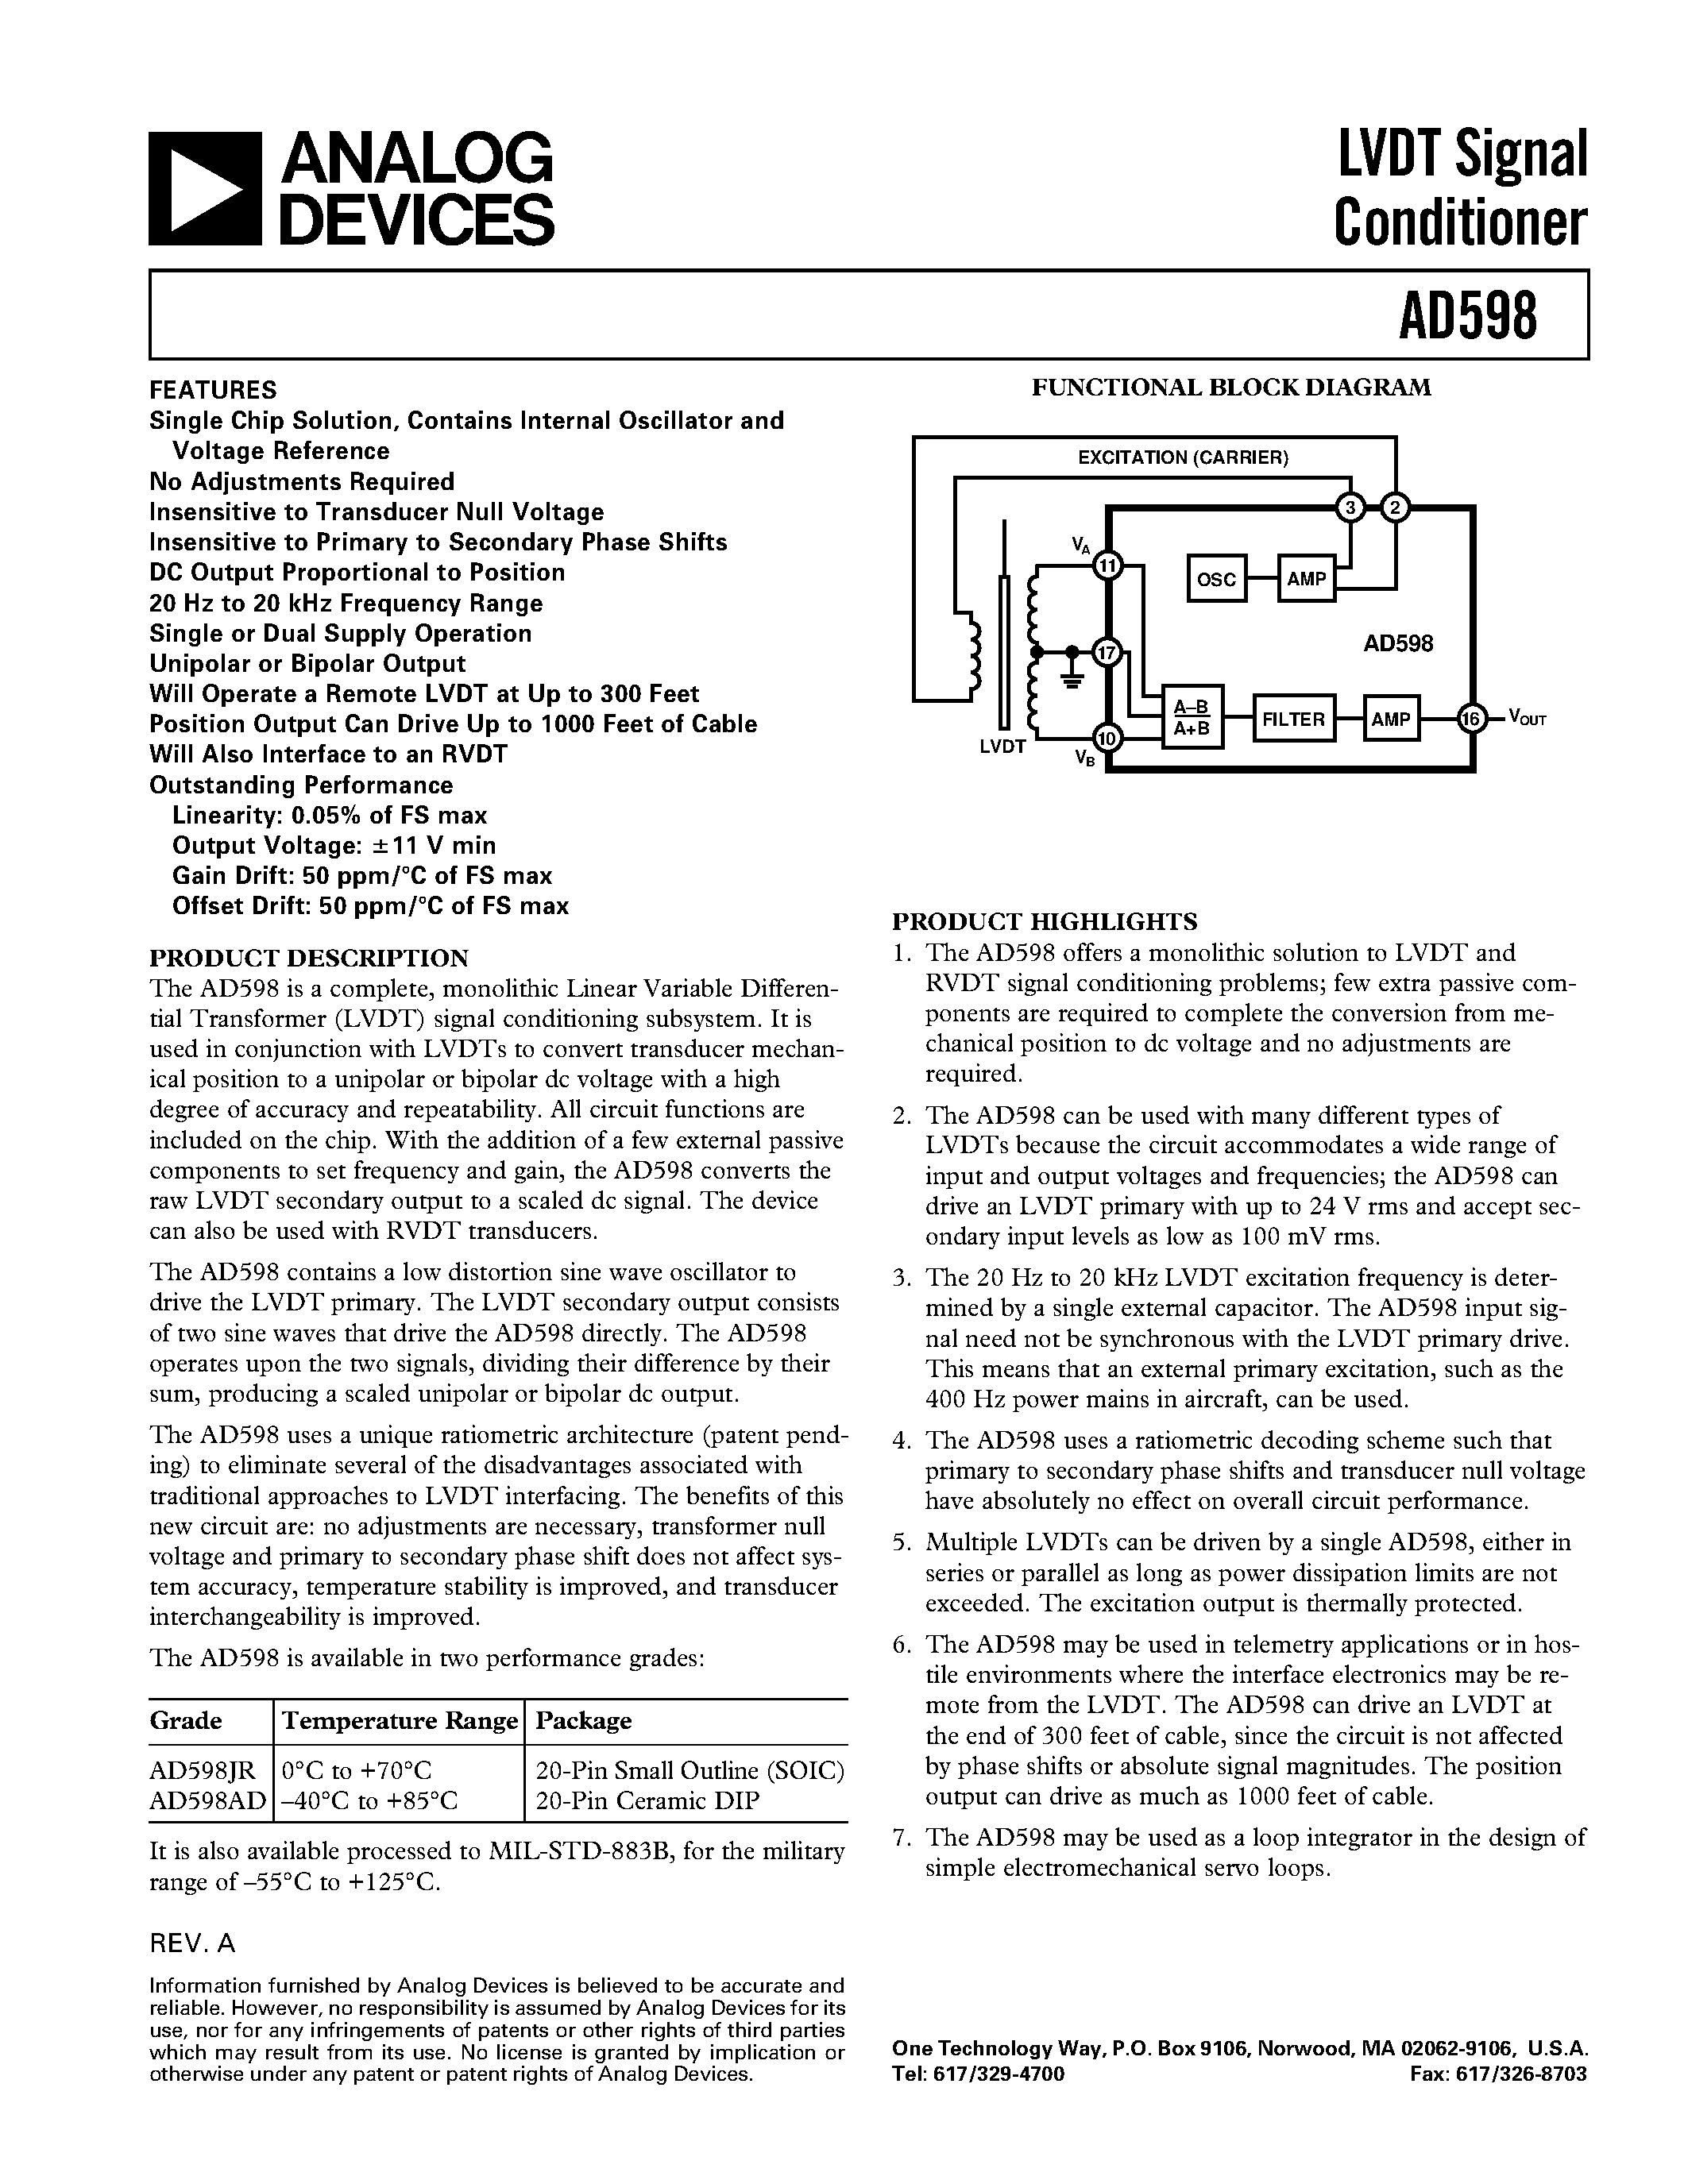 Даташит AD598J - LVDT Signal Conditioner страница 1